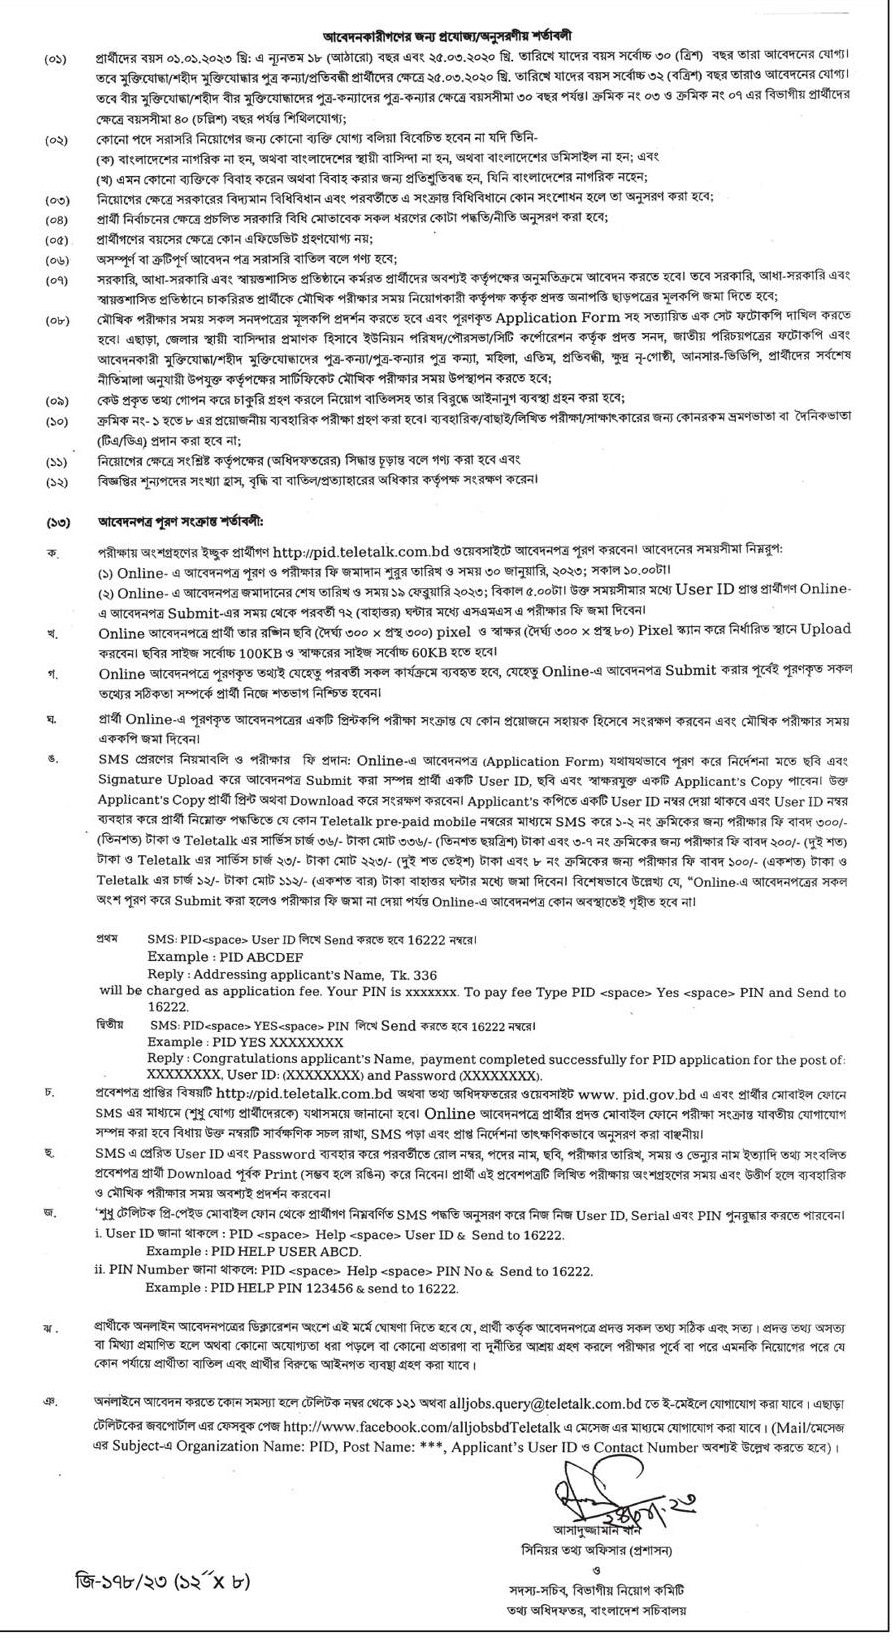 Ministry of Information MOI Job Circular 2023 - Information Division Job Circular 2023 - তথ্য ও সম্প্রচার মন্ত্রণালয় নিয়োগ বিজ্ঞপ্তি ২০২৩ - তথ্য অধিদপ্তর নিয়োগ বিজ্ঞপ্তি ২০২৩